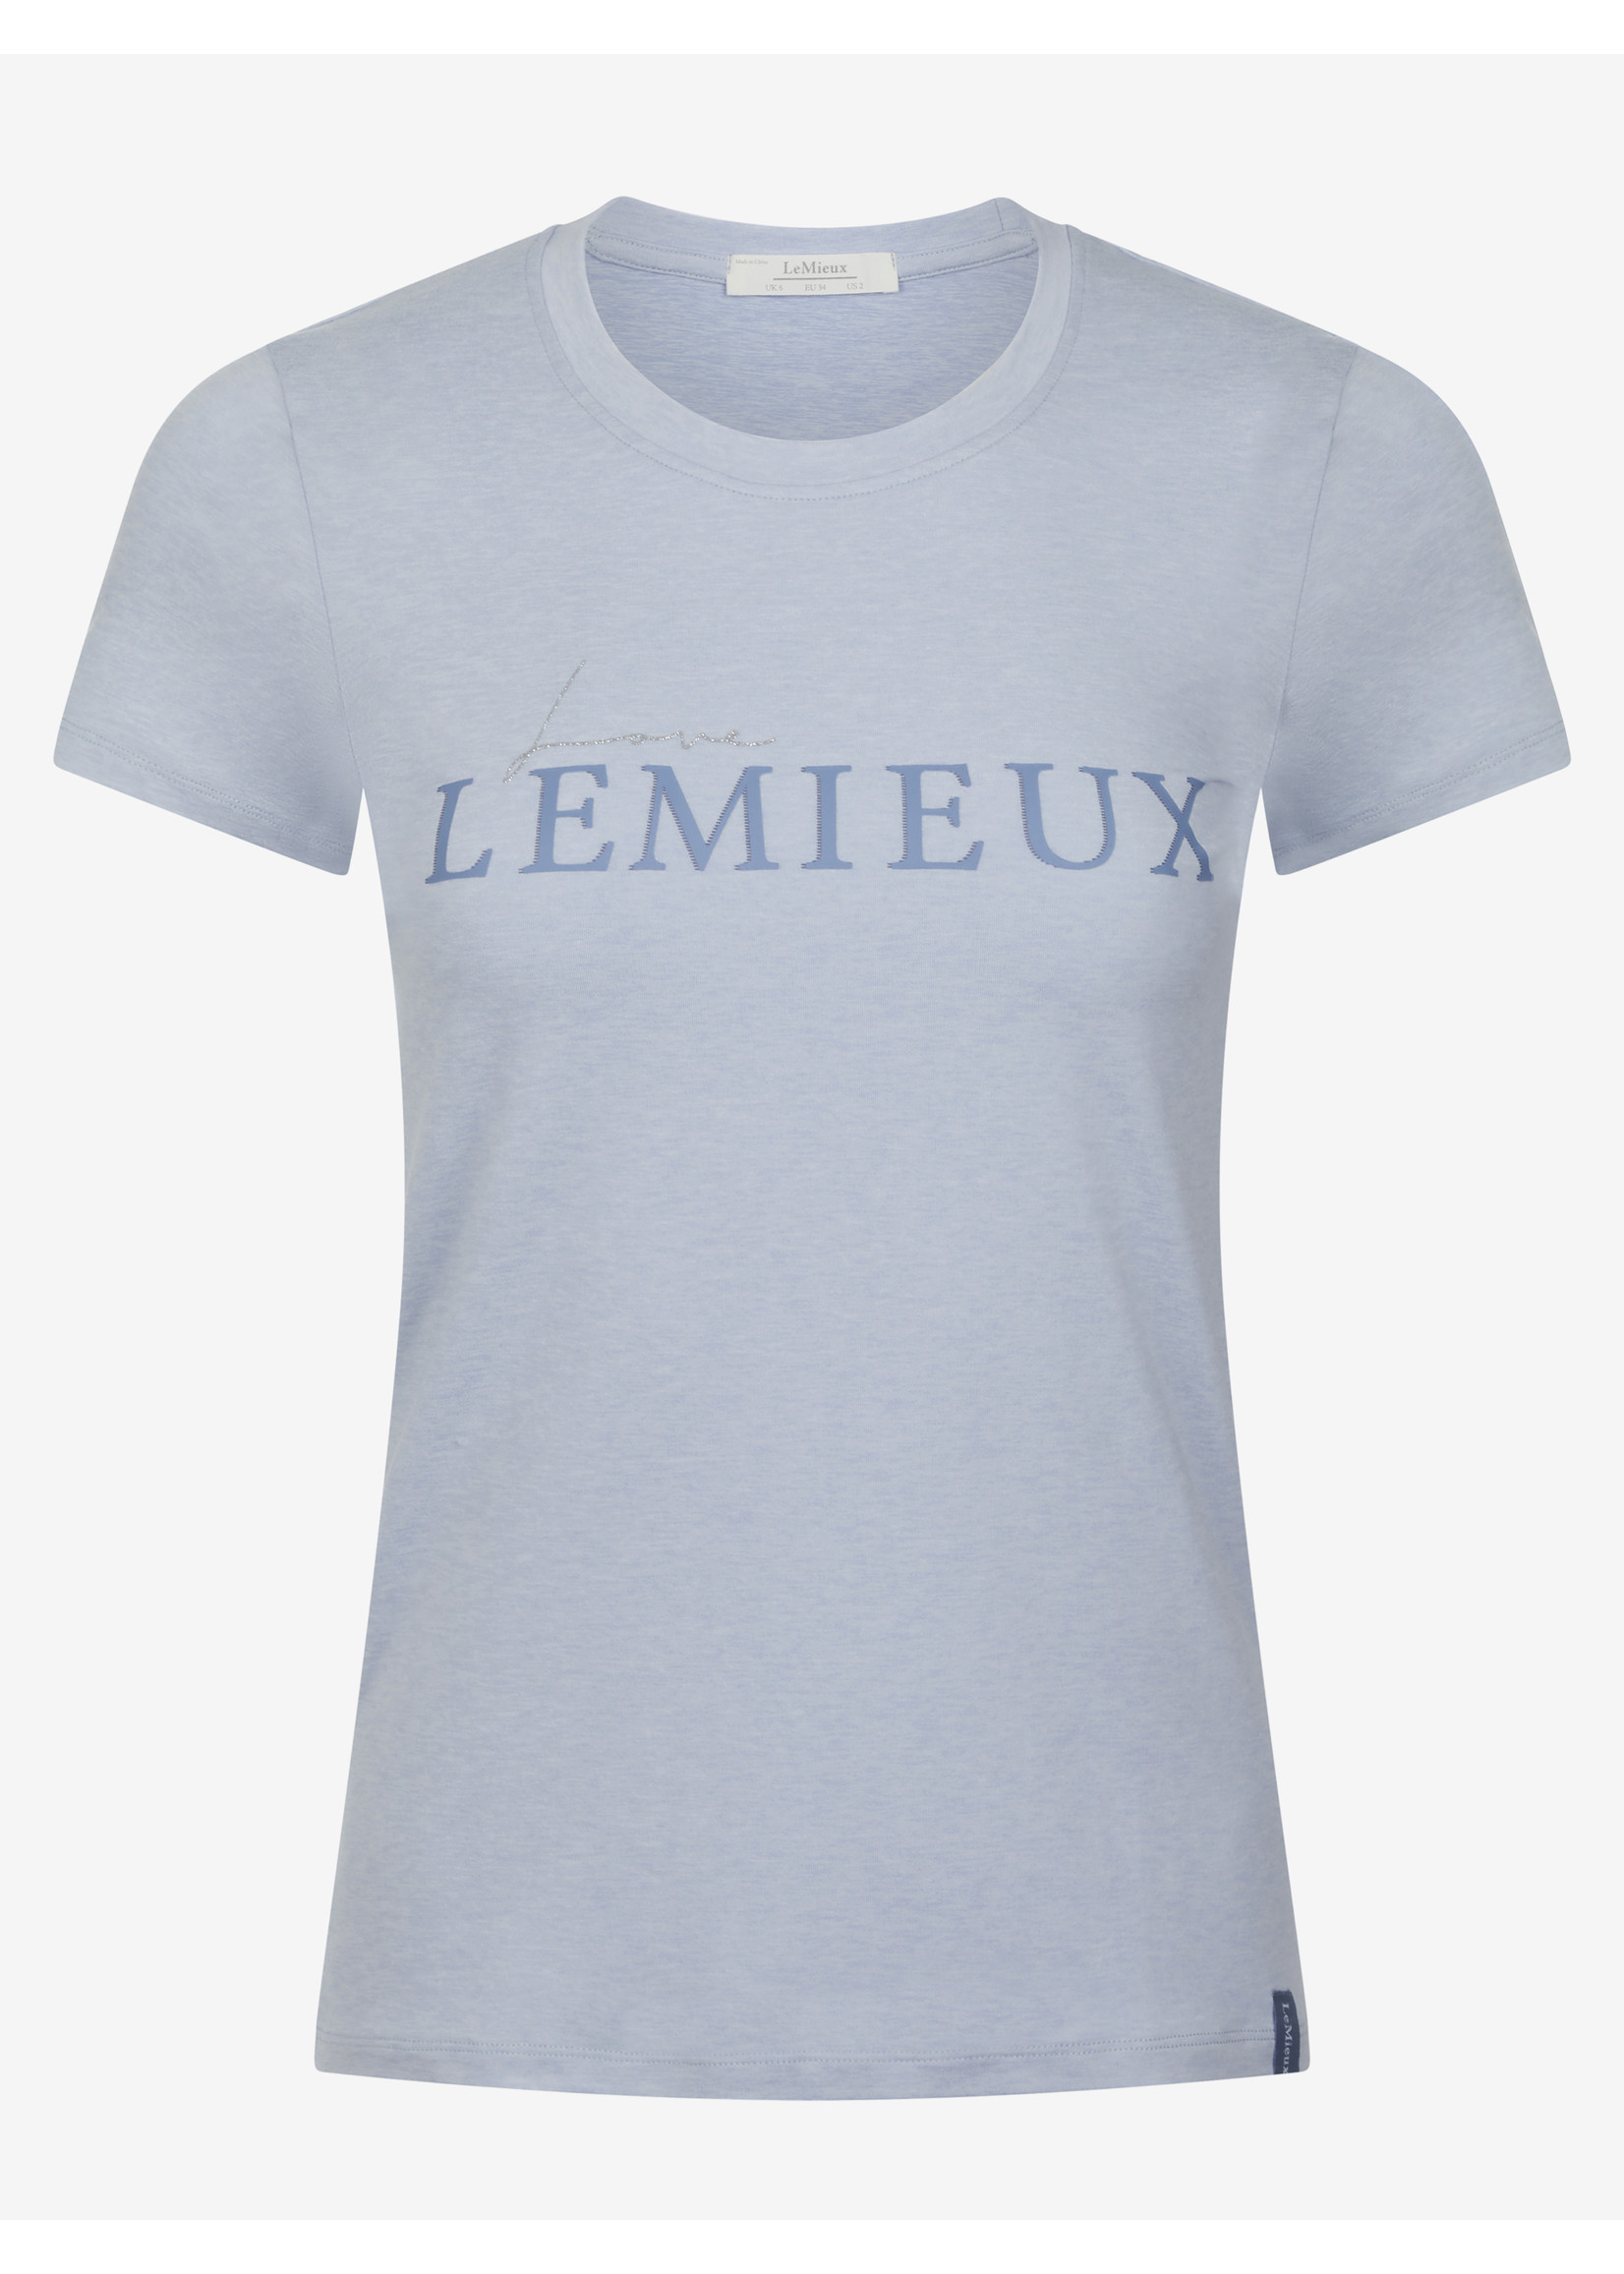 LeMieux Lemieux Classic Love 'T Shirt